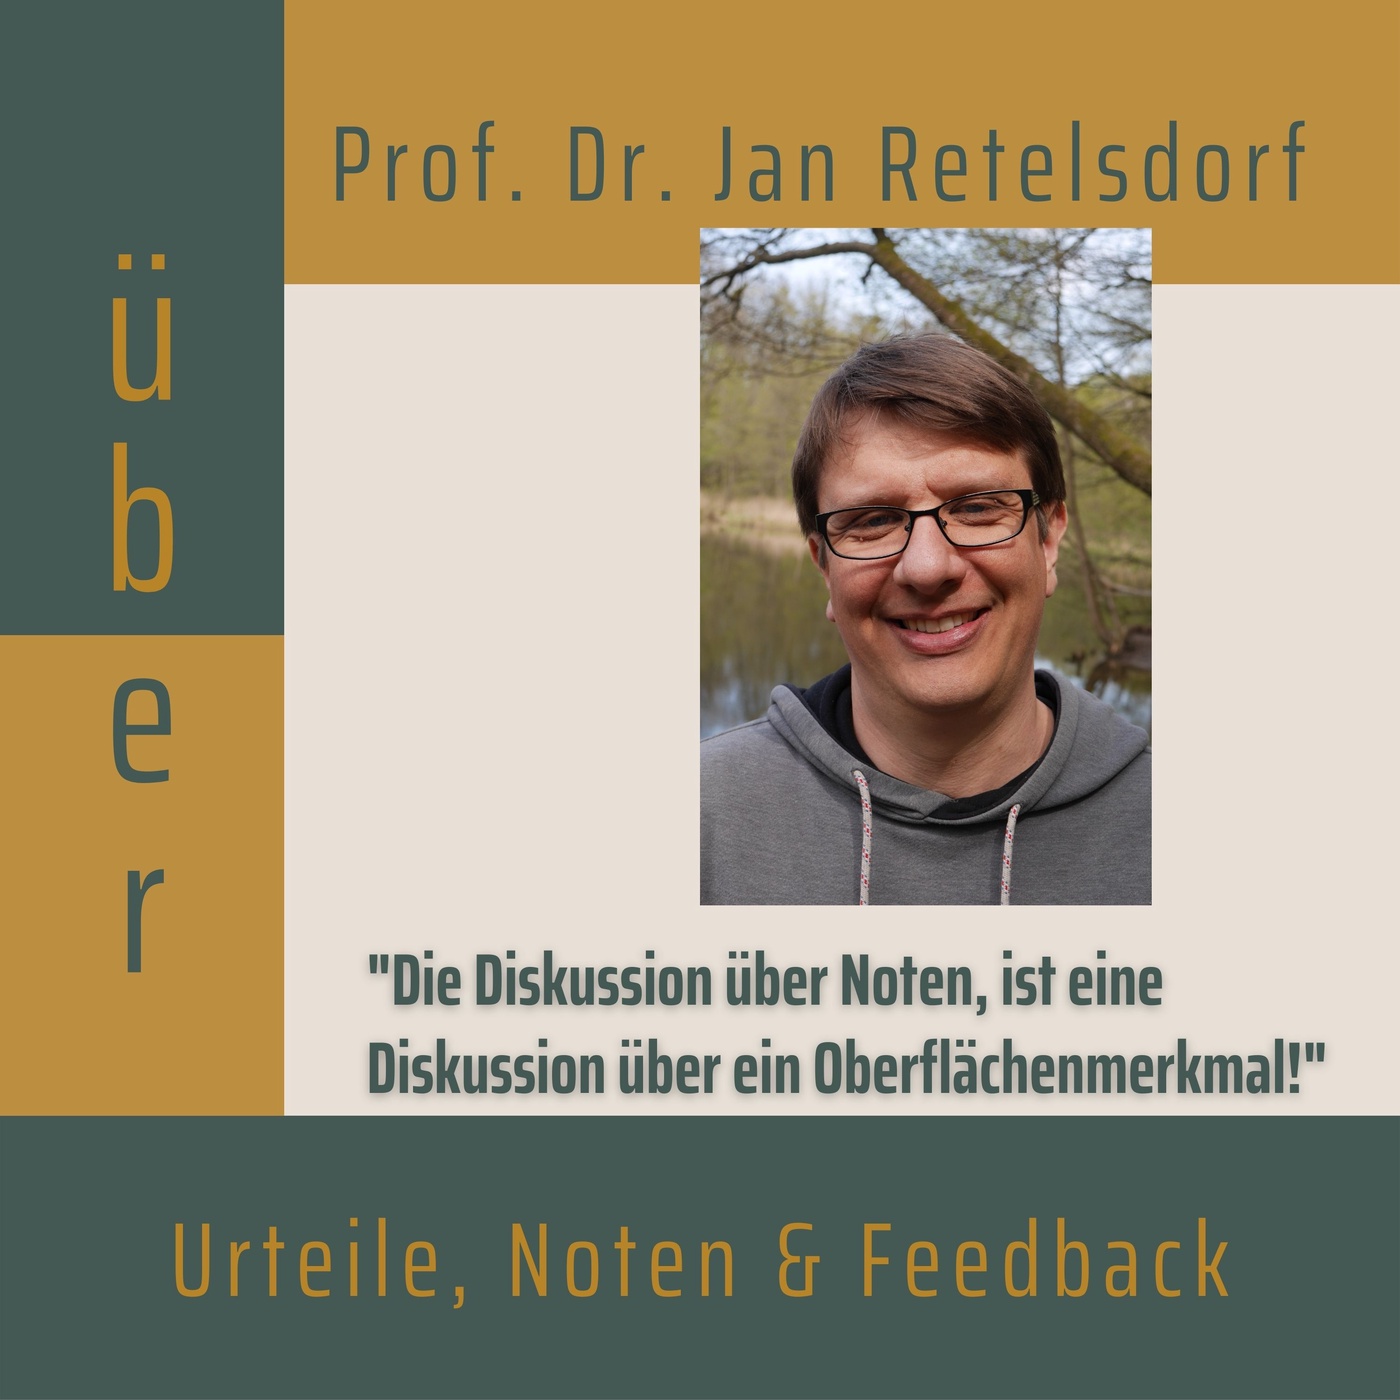 Folge 005: Prof. Dr. Jan Retelsdorf über Urteile, Noten und Feedback